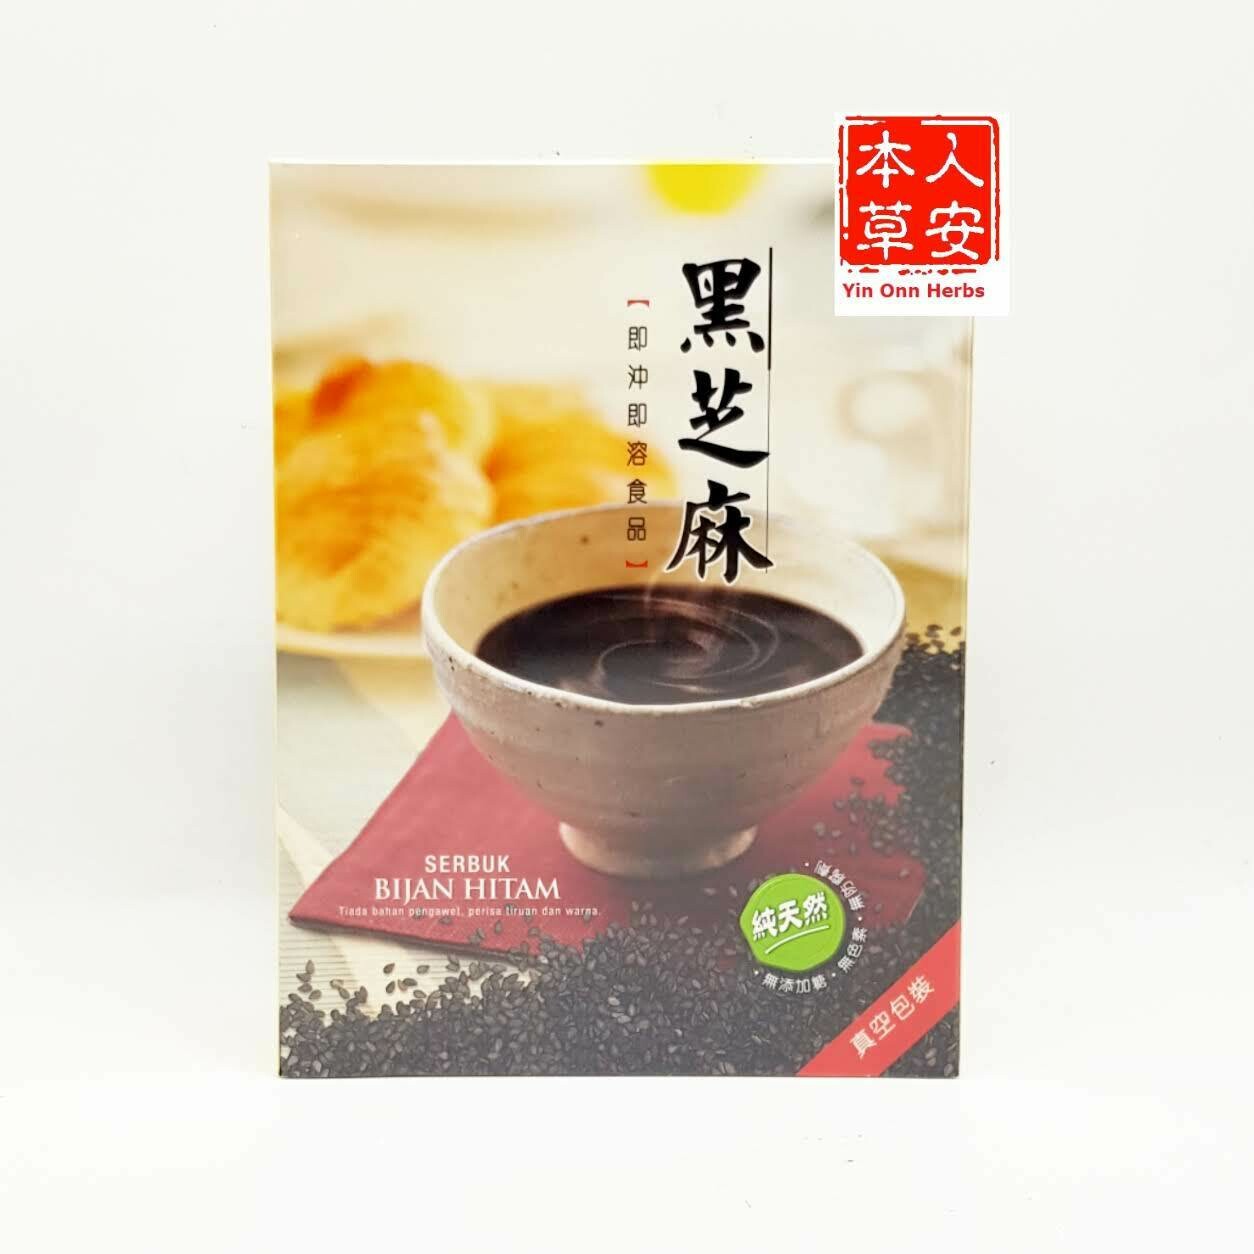 黑王黑芝麻粉 400gm Hei Hwang Black Sesame Powder